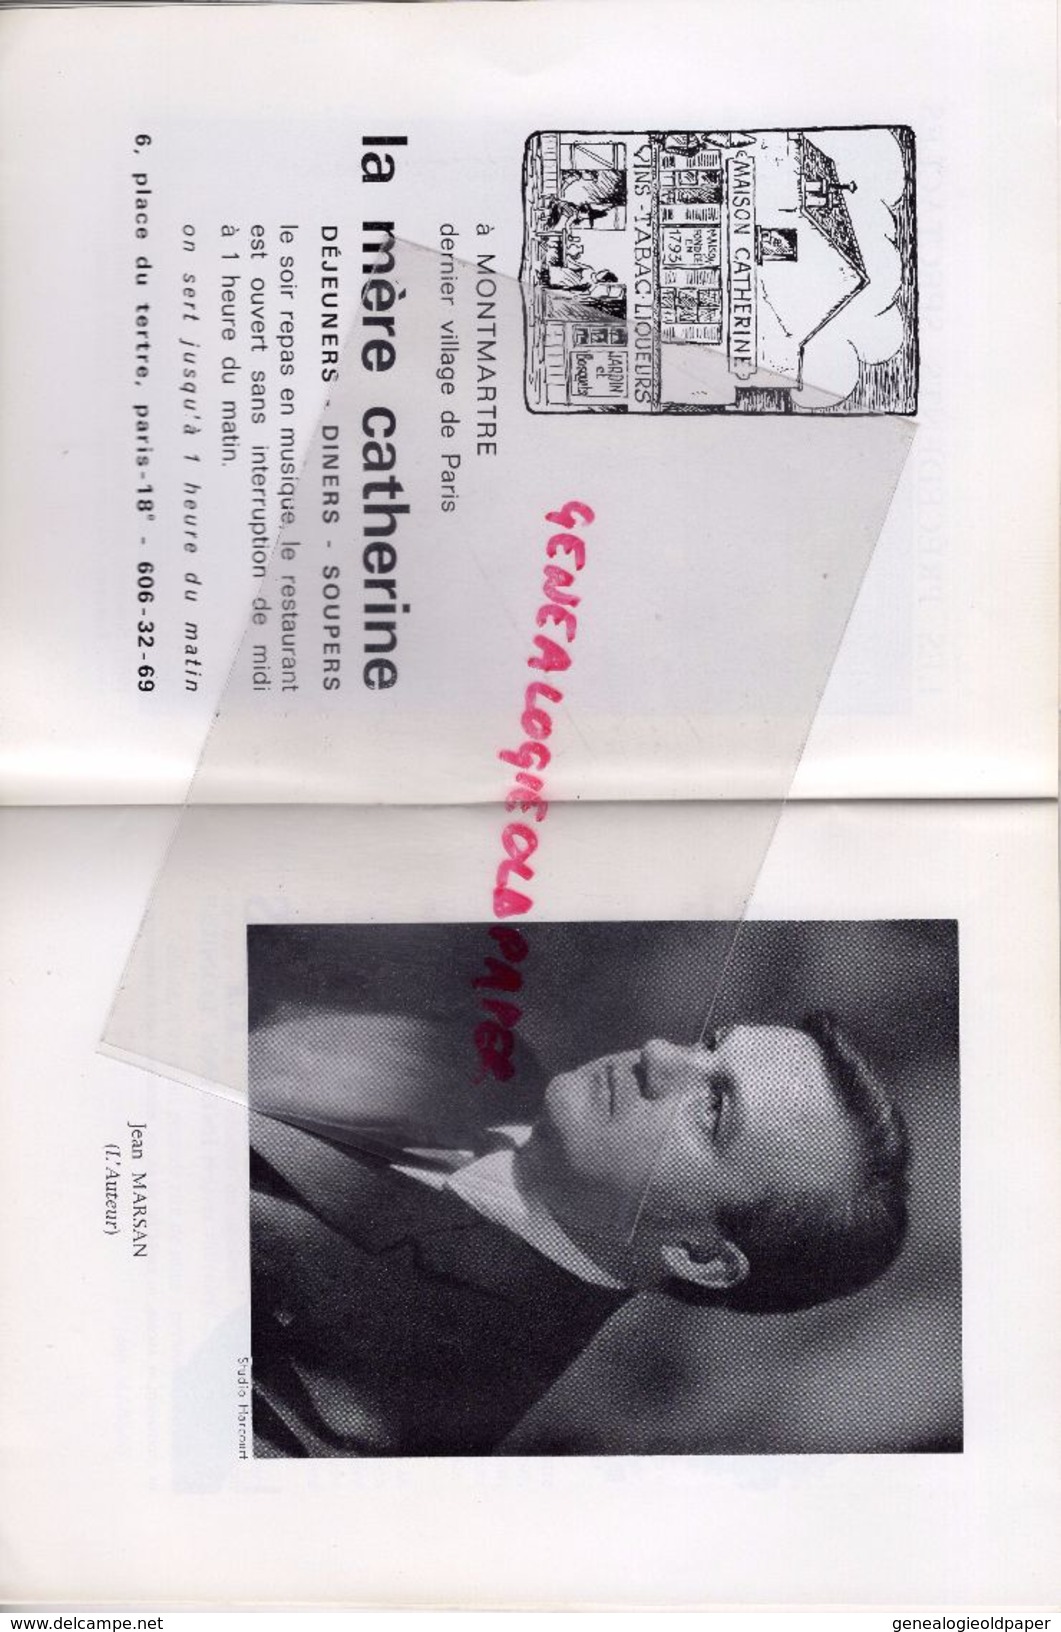 75-PARIS-PROGRAMME THEATRE SAINT GEORGES-MARY MORGAN-INTERDIT AU PUBLIC-JEAN MARSAN-JEAN LE POULAIN-MERCADIER-JOFFO-1968 - Programmes